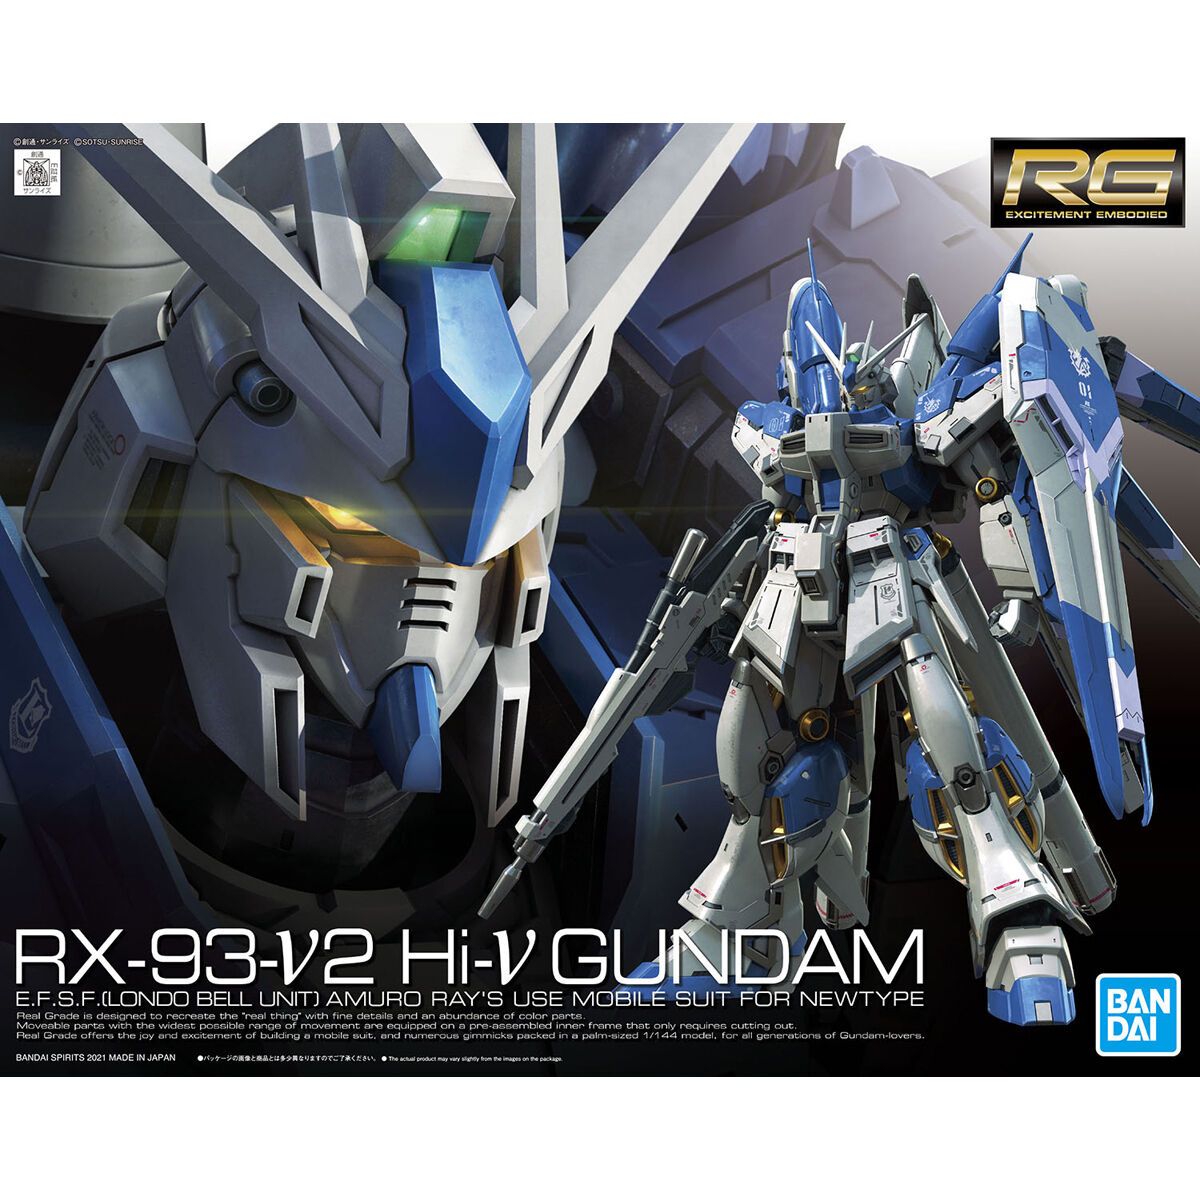 Bandai 1/144 Scale RG Hi-v Gundam Model Kit